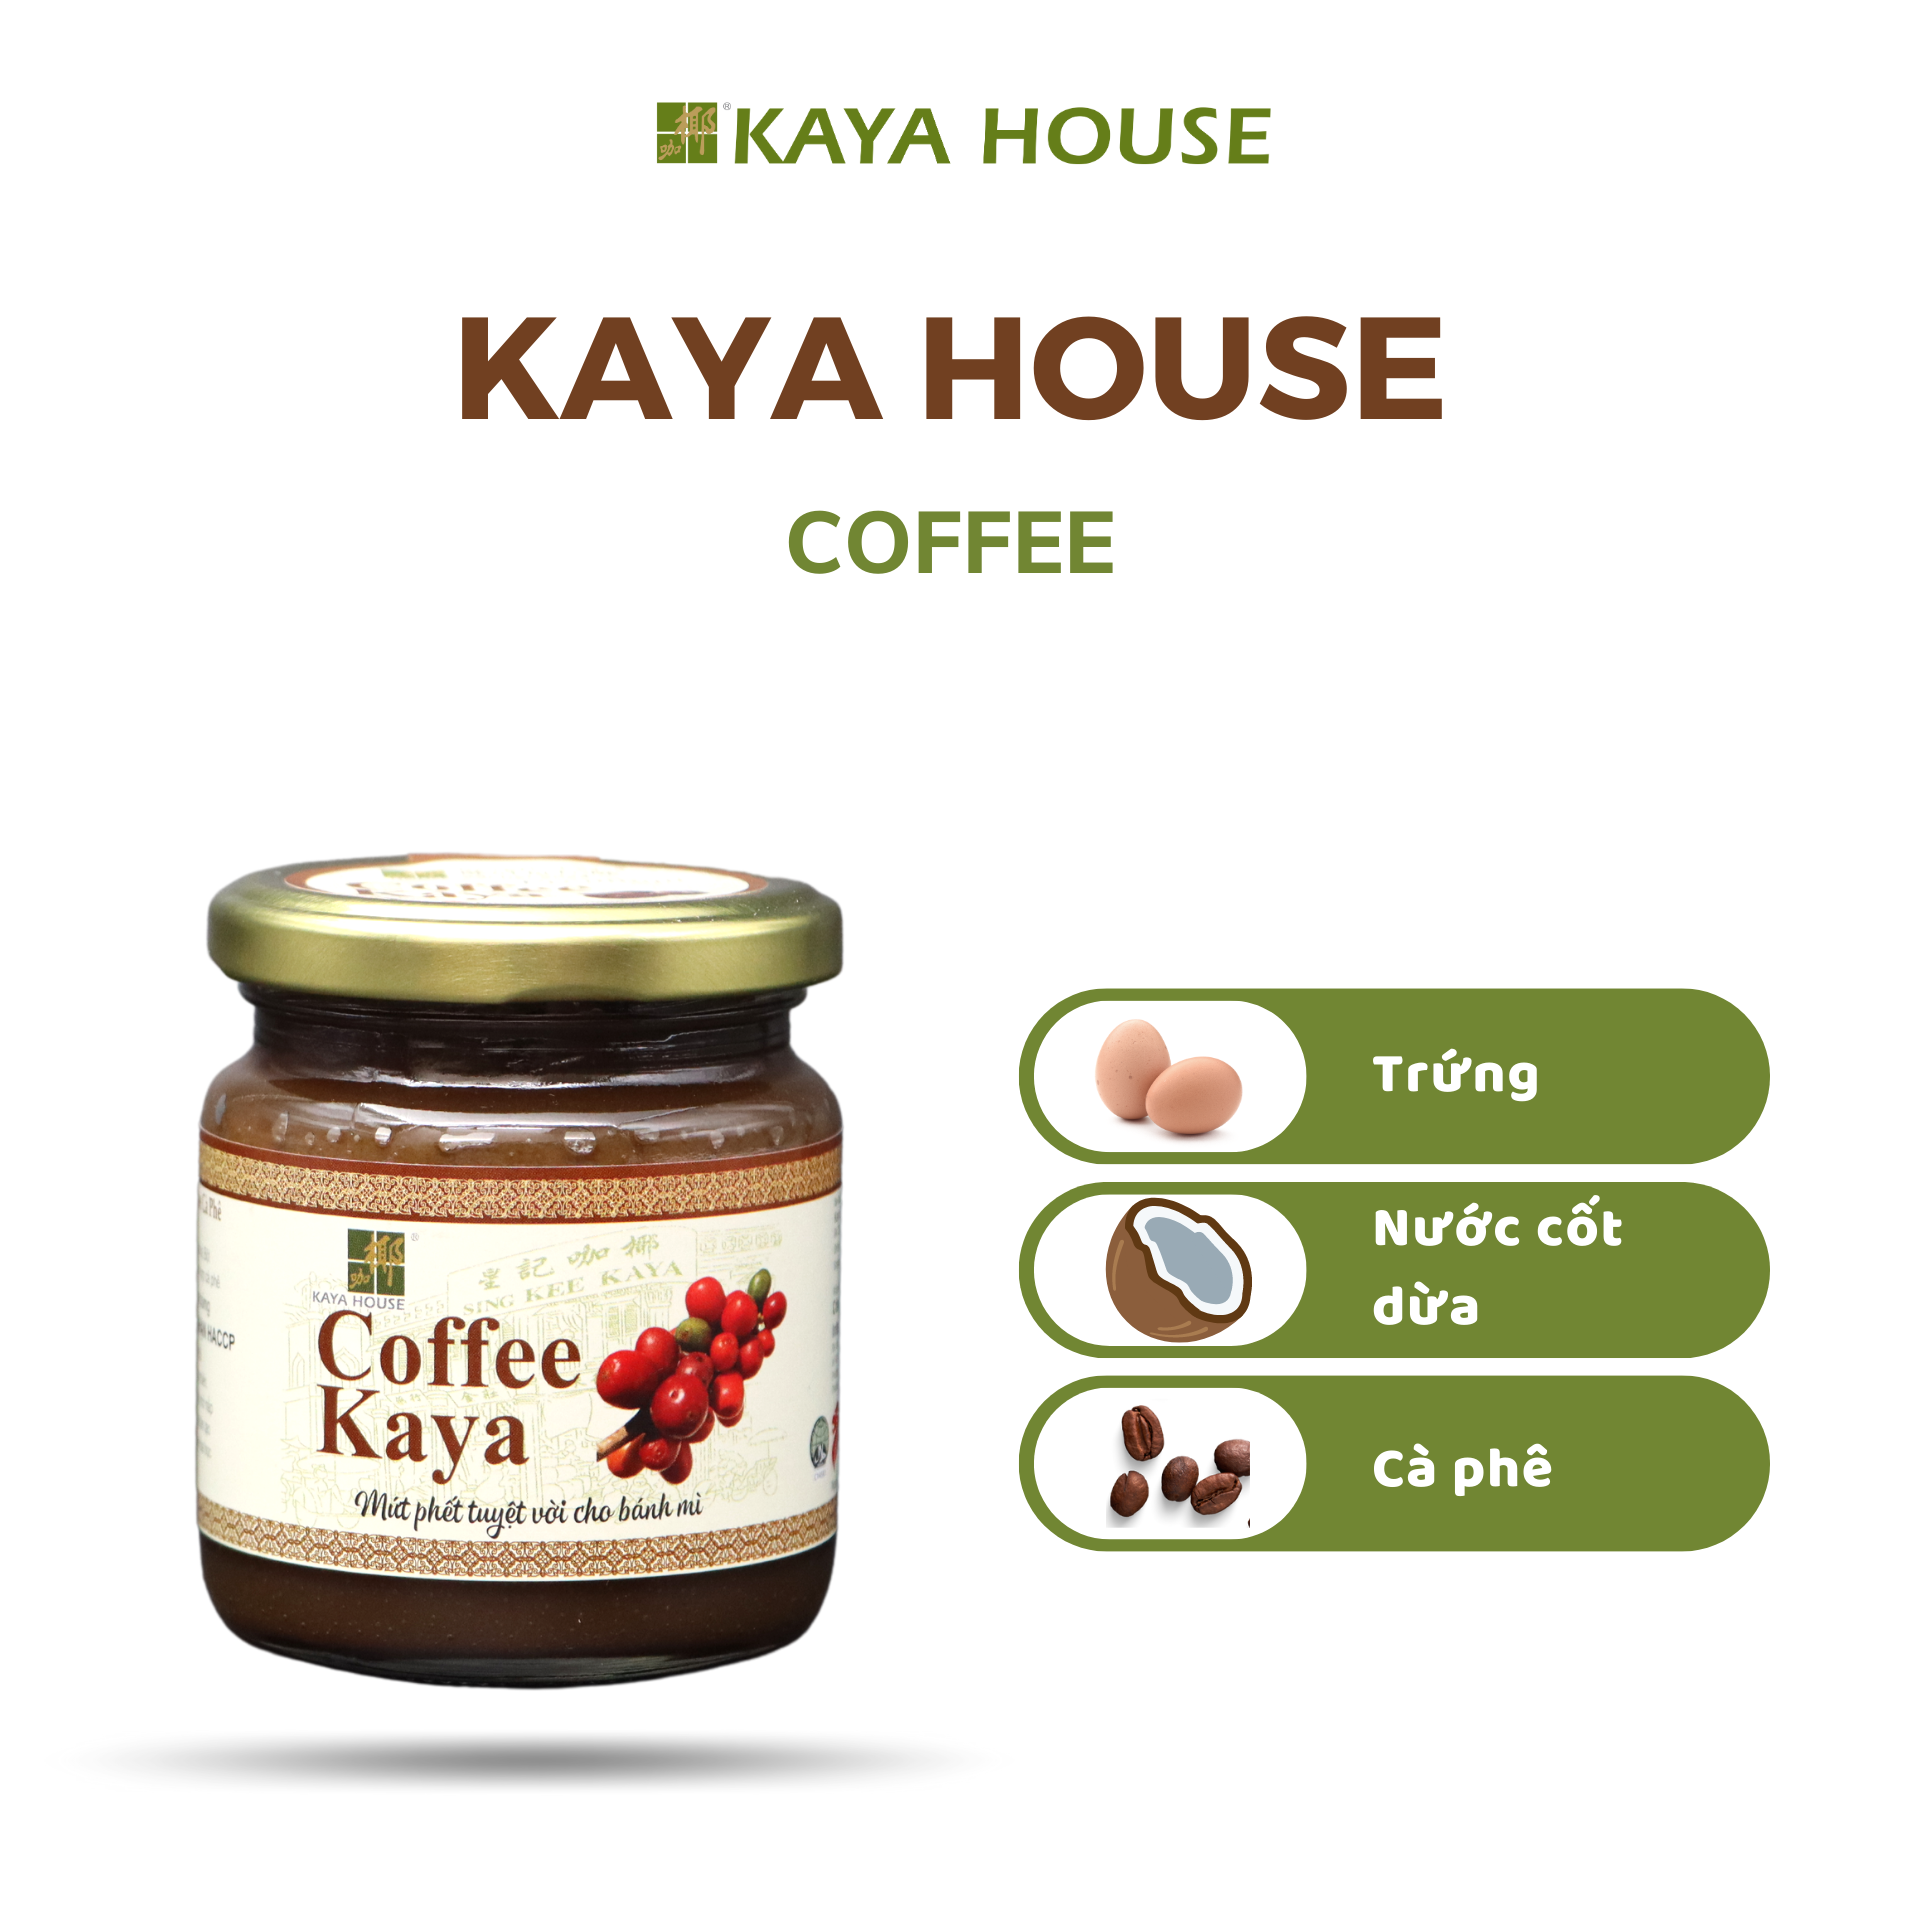 Mứt Kaya Singapore Chocolate hũ 225g - Kaya House - Ăn kèm với Sandwich, làm nguyên liệu nấu ăn